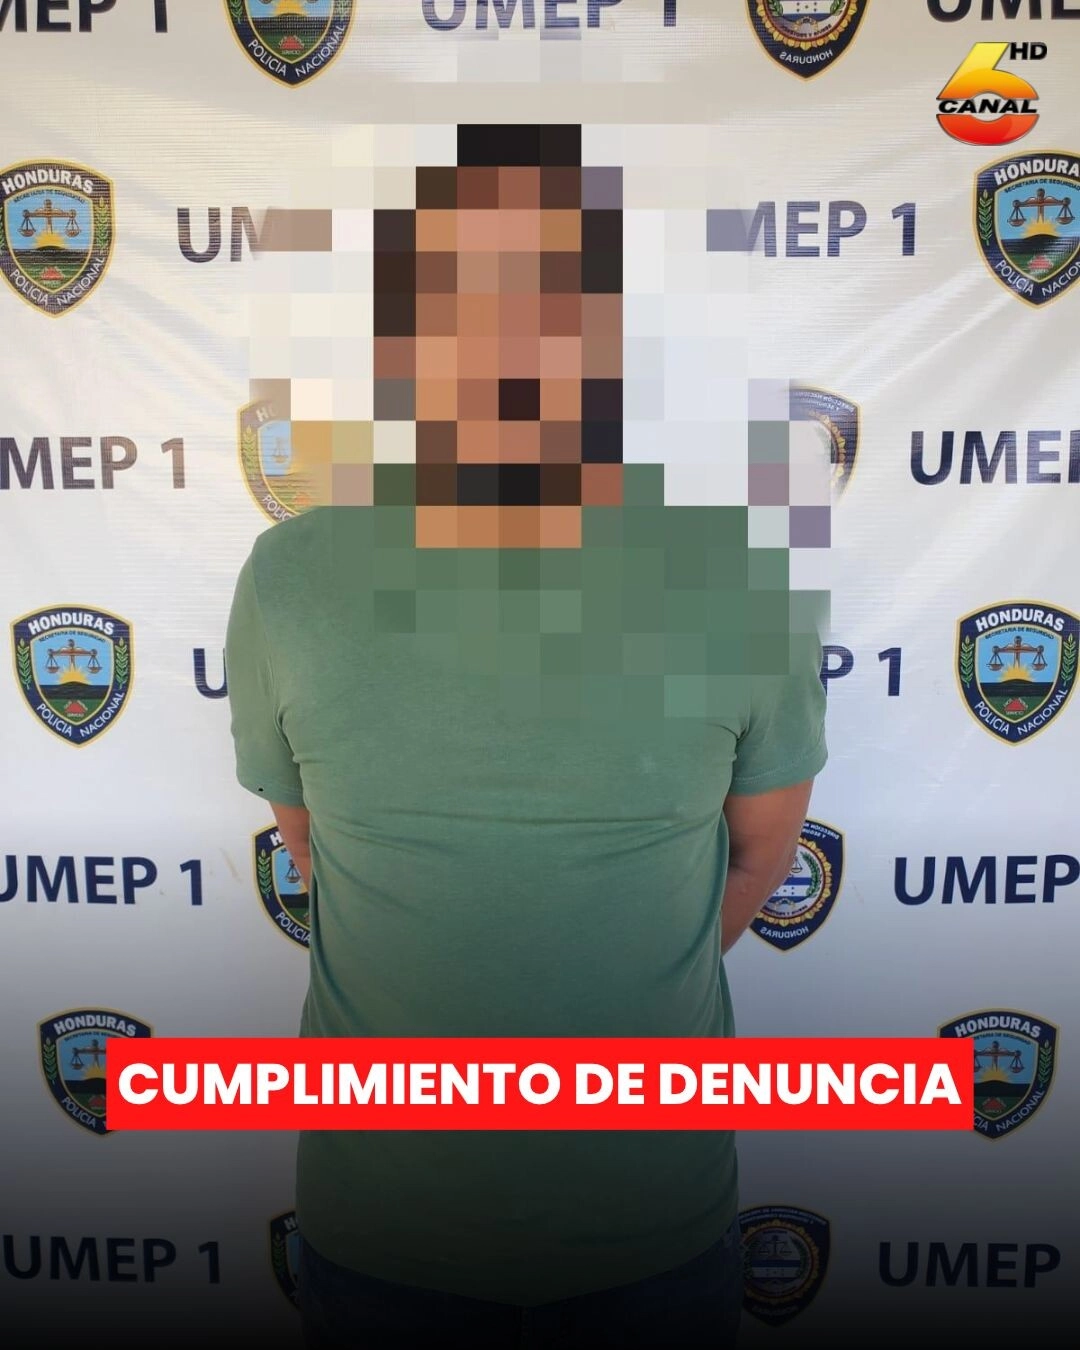 Por El Delito De Maltrato Familiar, Agentes De La Umep 1 Arrestan A Sujeto En Tegucigalpa